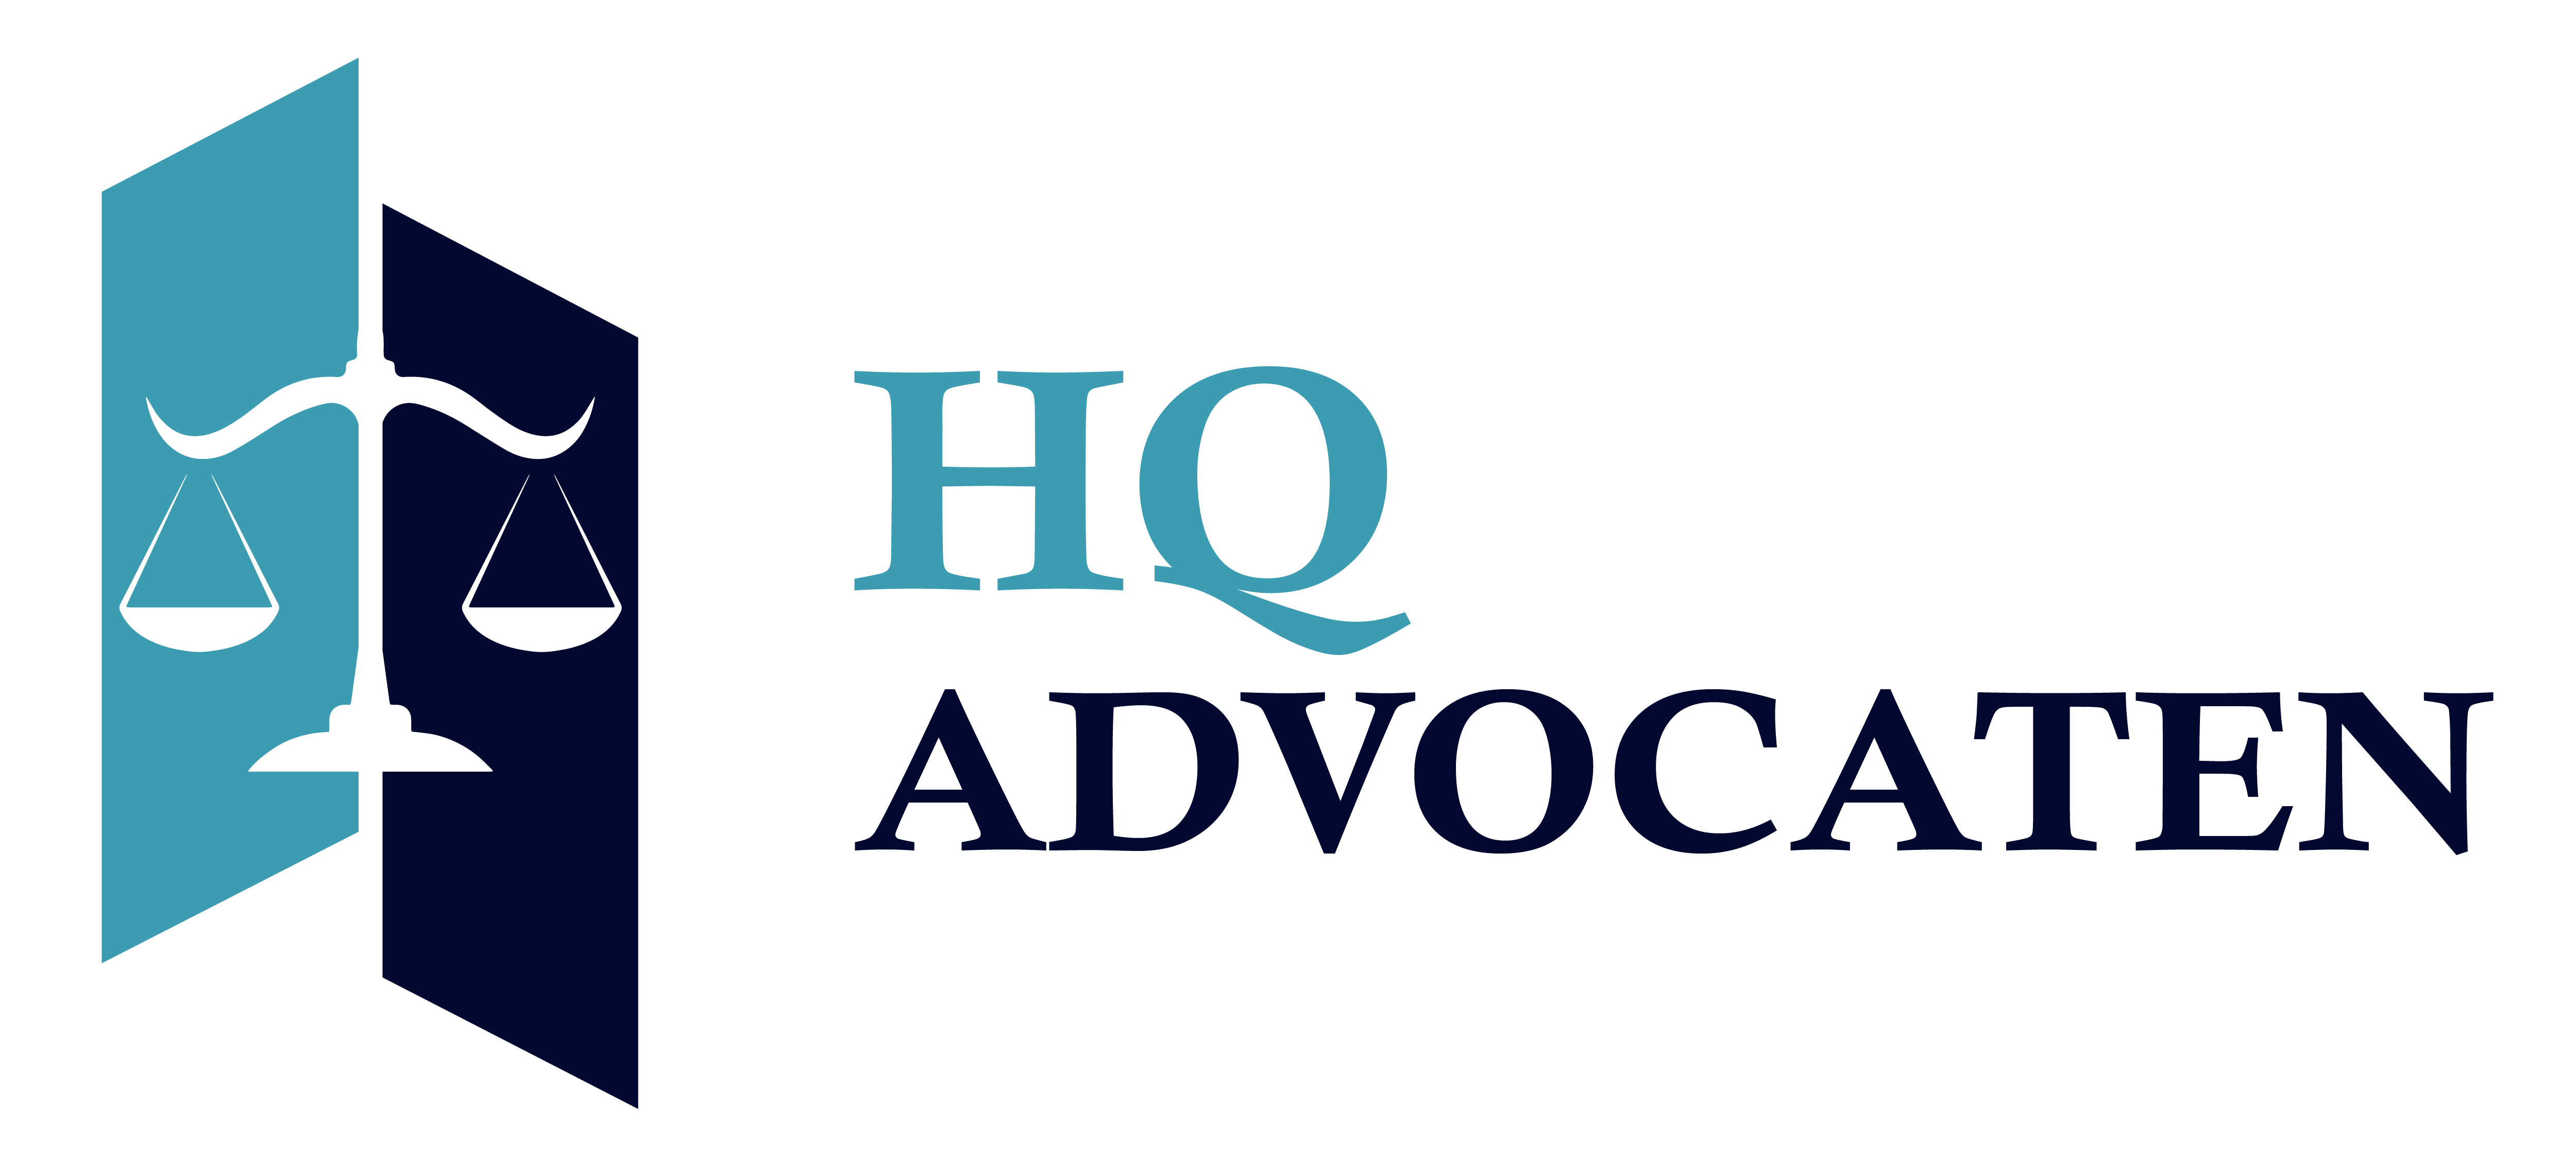 Advocatenkantoor Logo